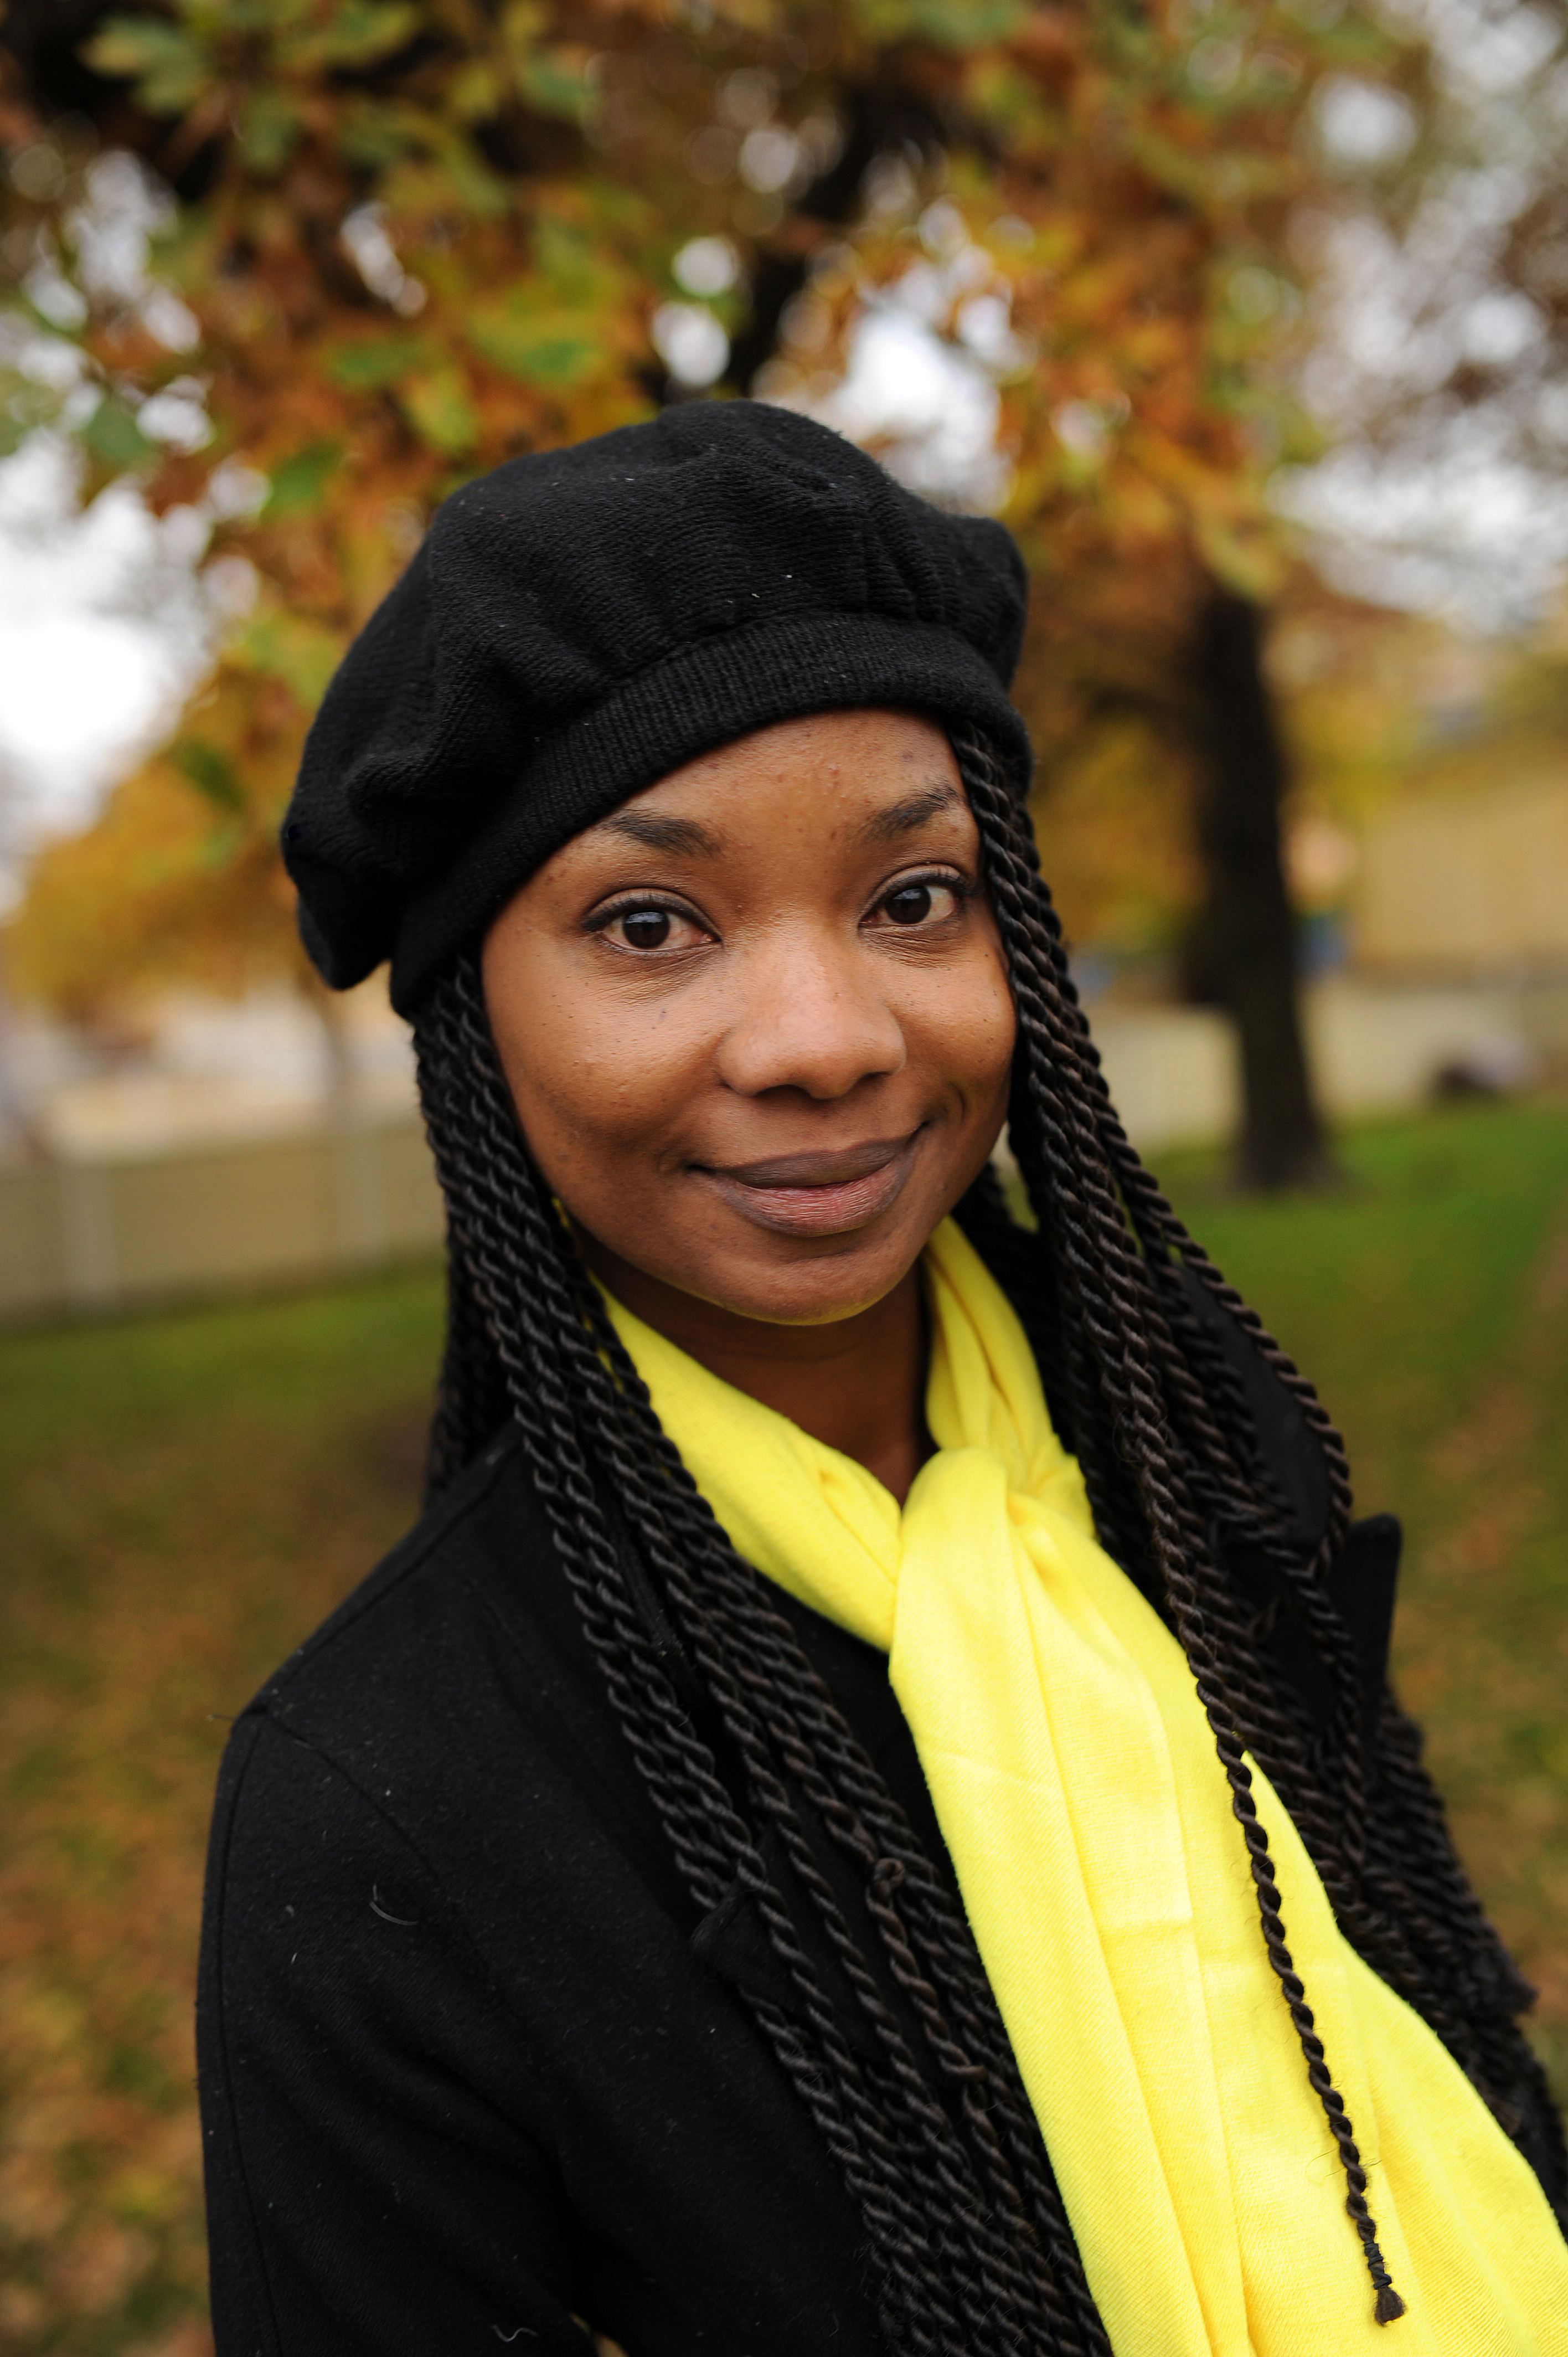 Sedan studietiden har Karent Hinestroza engagerat sig för afro-colombianernas och kvinnornas rättigheter. ”Jag jobbar med nätverket Chao Racismo. Vi kämpar mot diskriminering och uppmuntrar unga afro-colombianer att tro på sig själva". Foto: Joanna Lindén-Montes